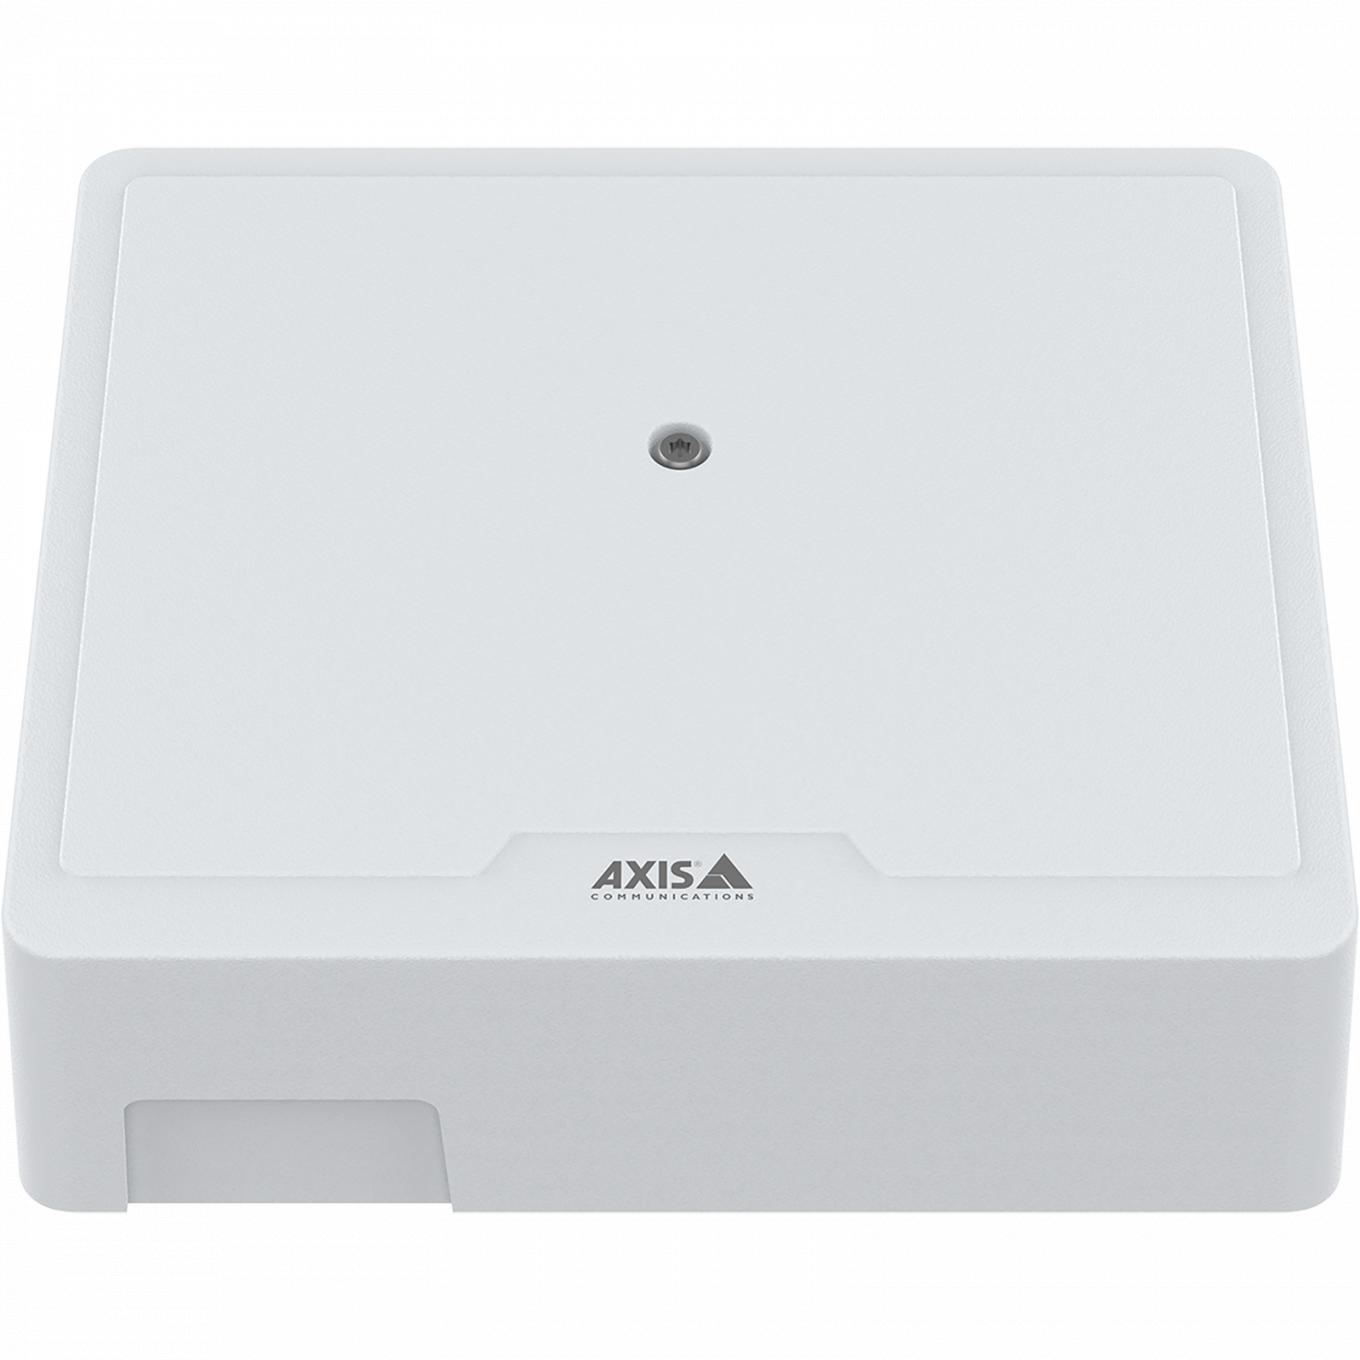 AXIS A1210 Network Door Controller, visto desde el frente